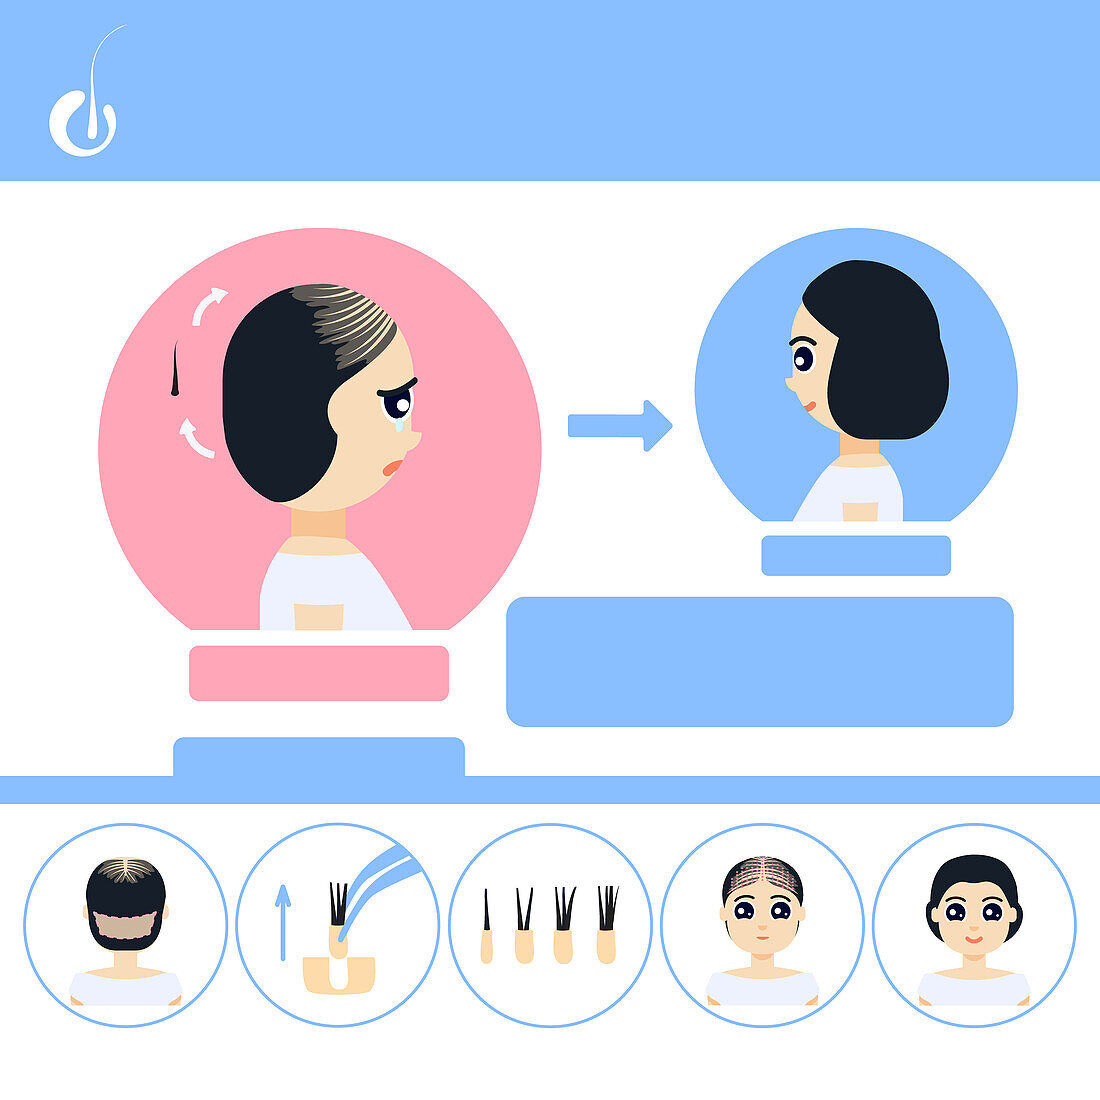 FUE hair transplantation in women, illustration